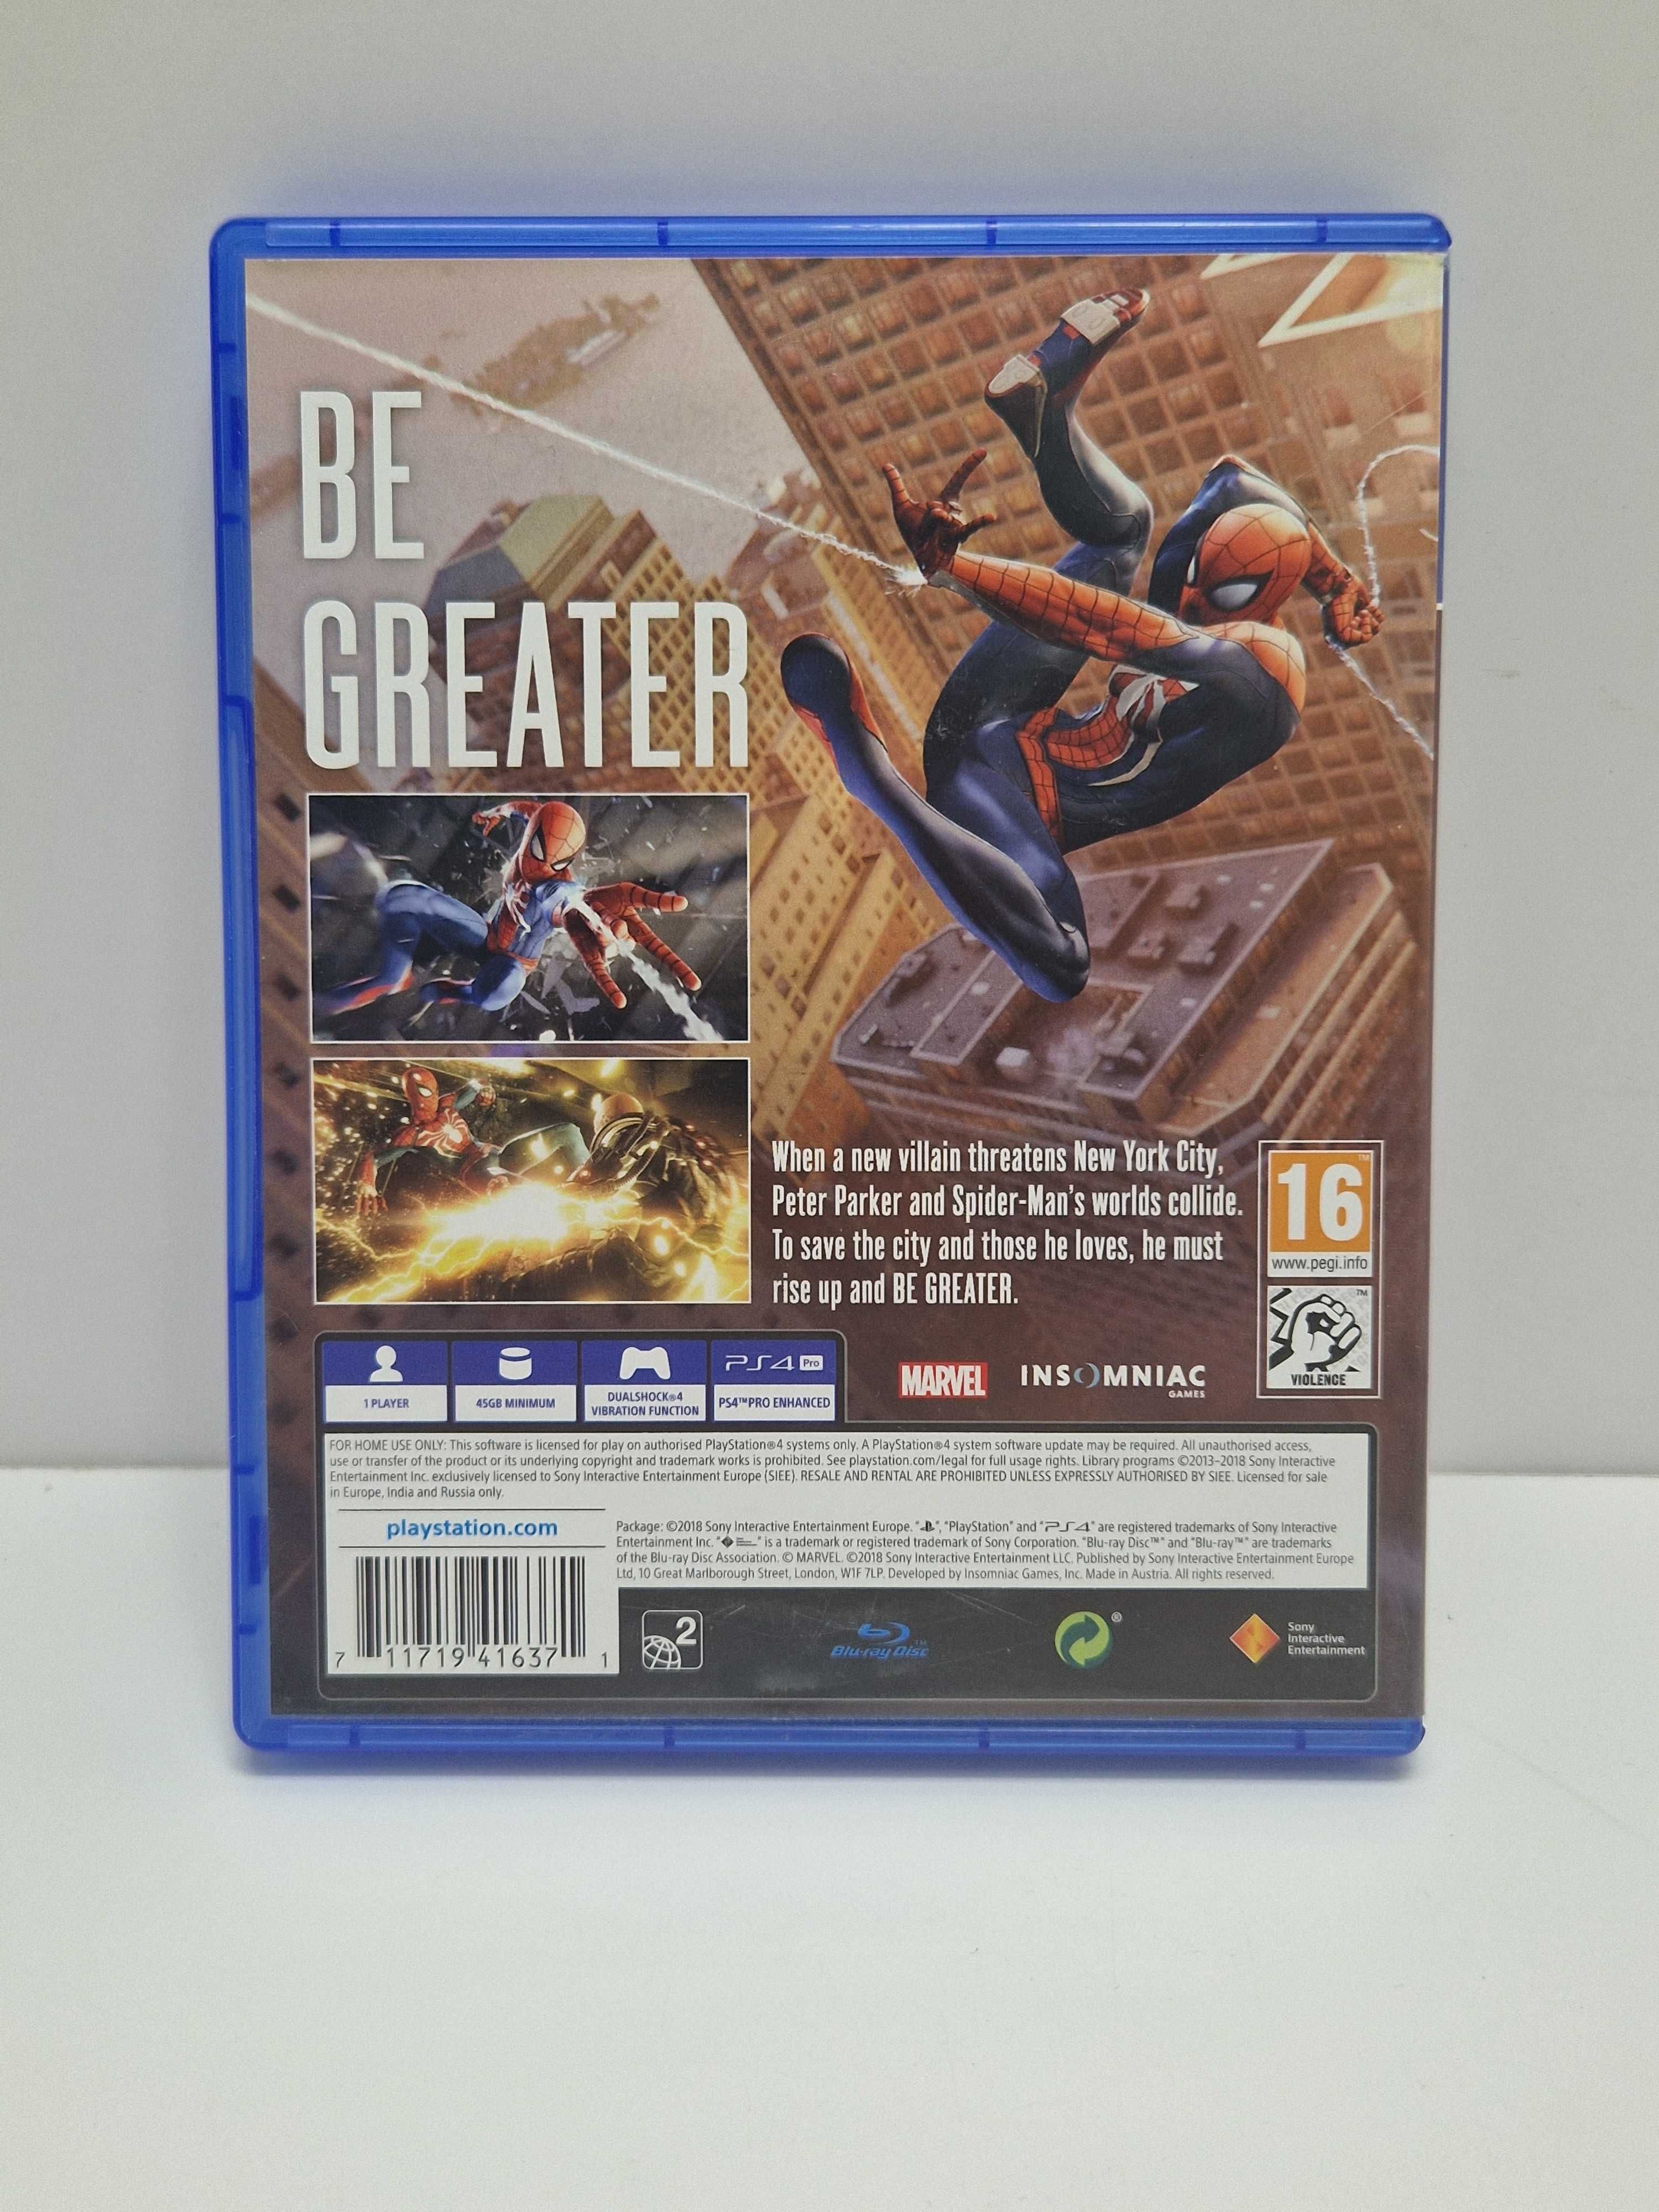 Gra Marvel Spider-Man Playstation 4